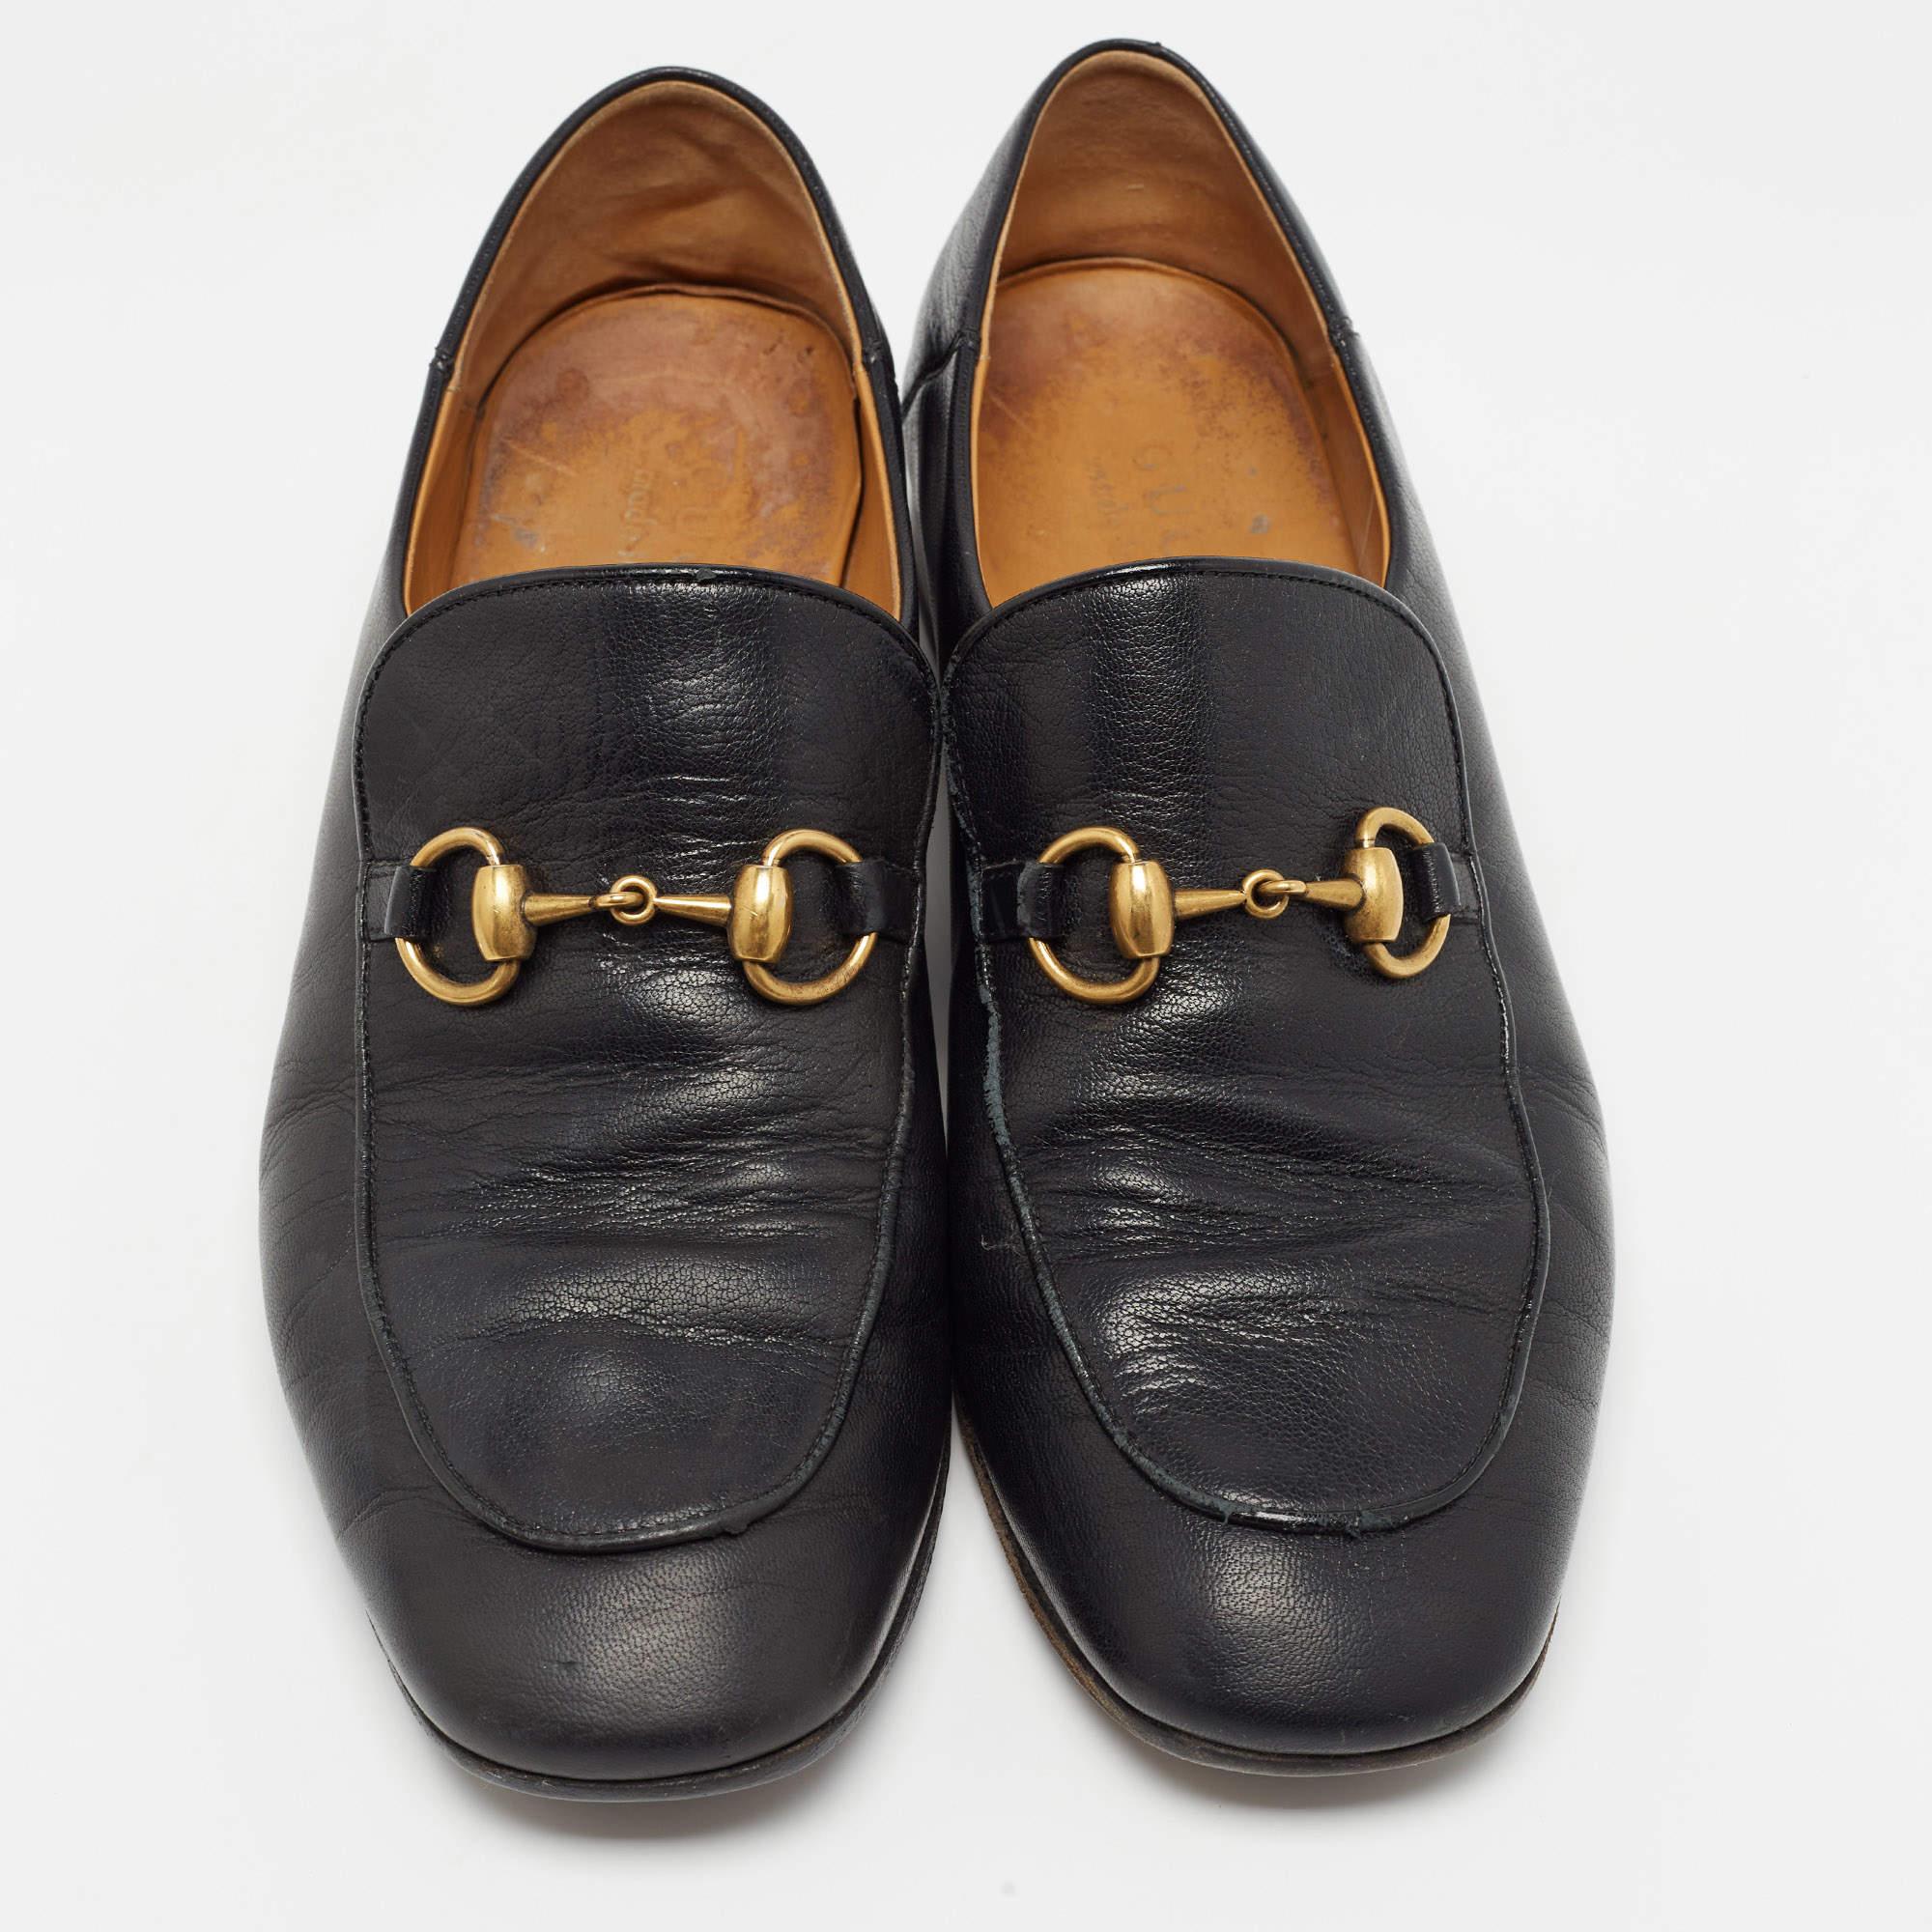 Pratiques, à la mode et durables, ces mocassins Gucci Horsebit 1953 sont soigneusement conçus pour accompagner votre style au quotidien. Ils sont fabriqués à l'aide des meilleurs matériaux pour être un achat de premier ordre.

